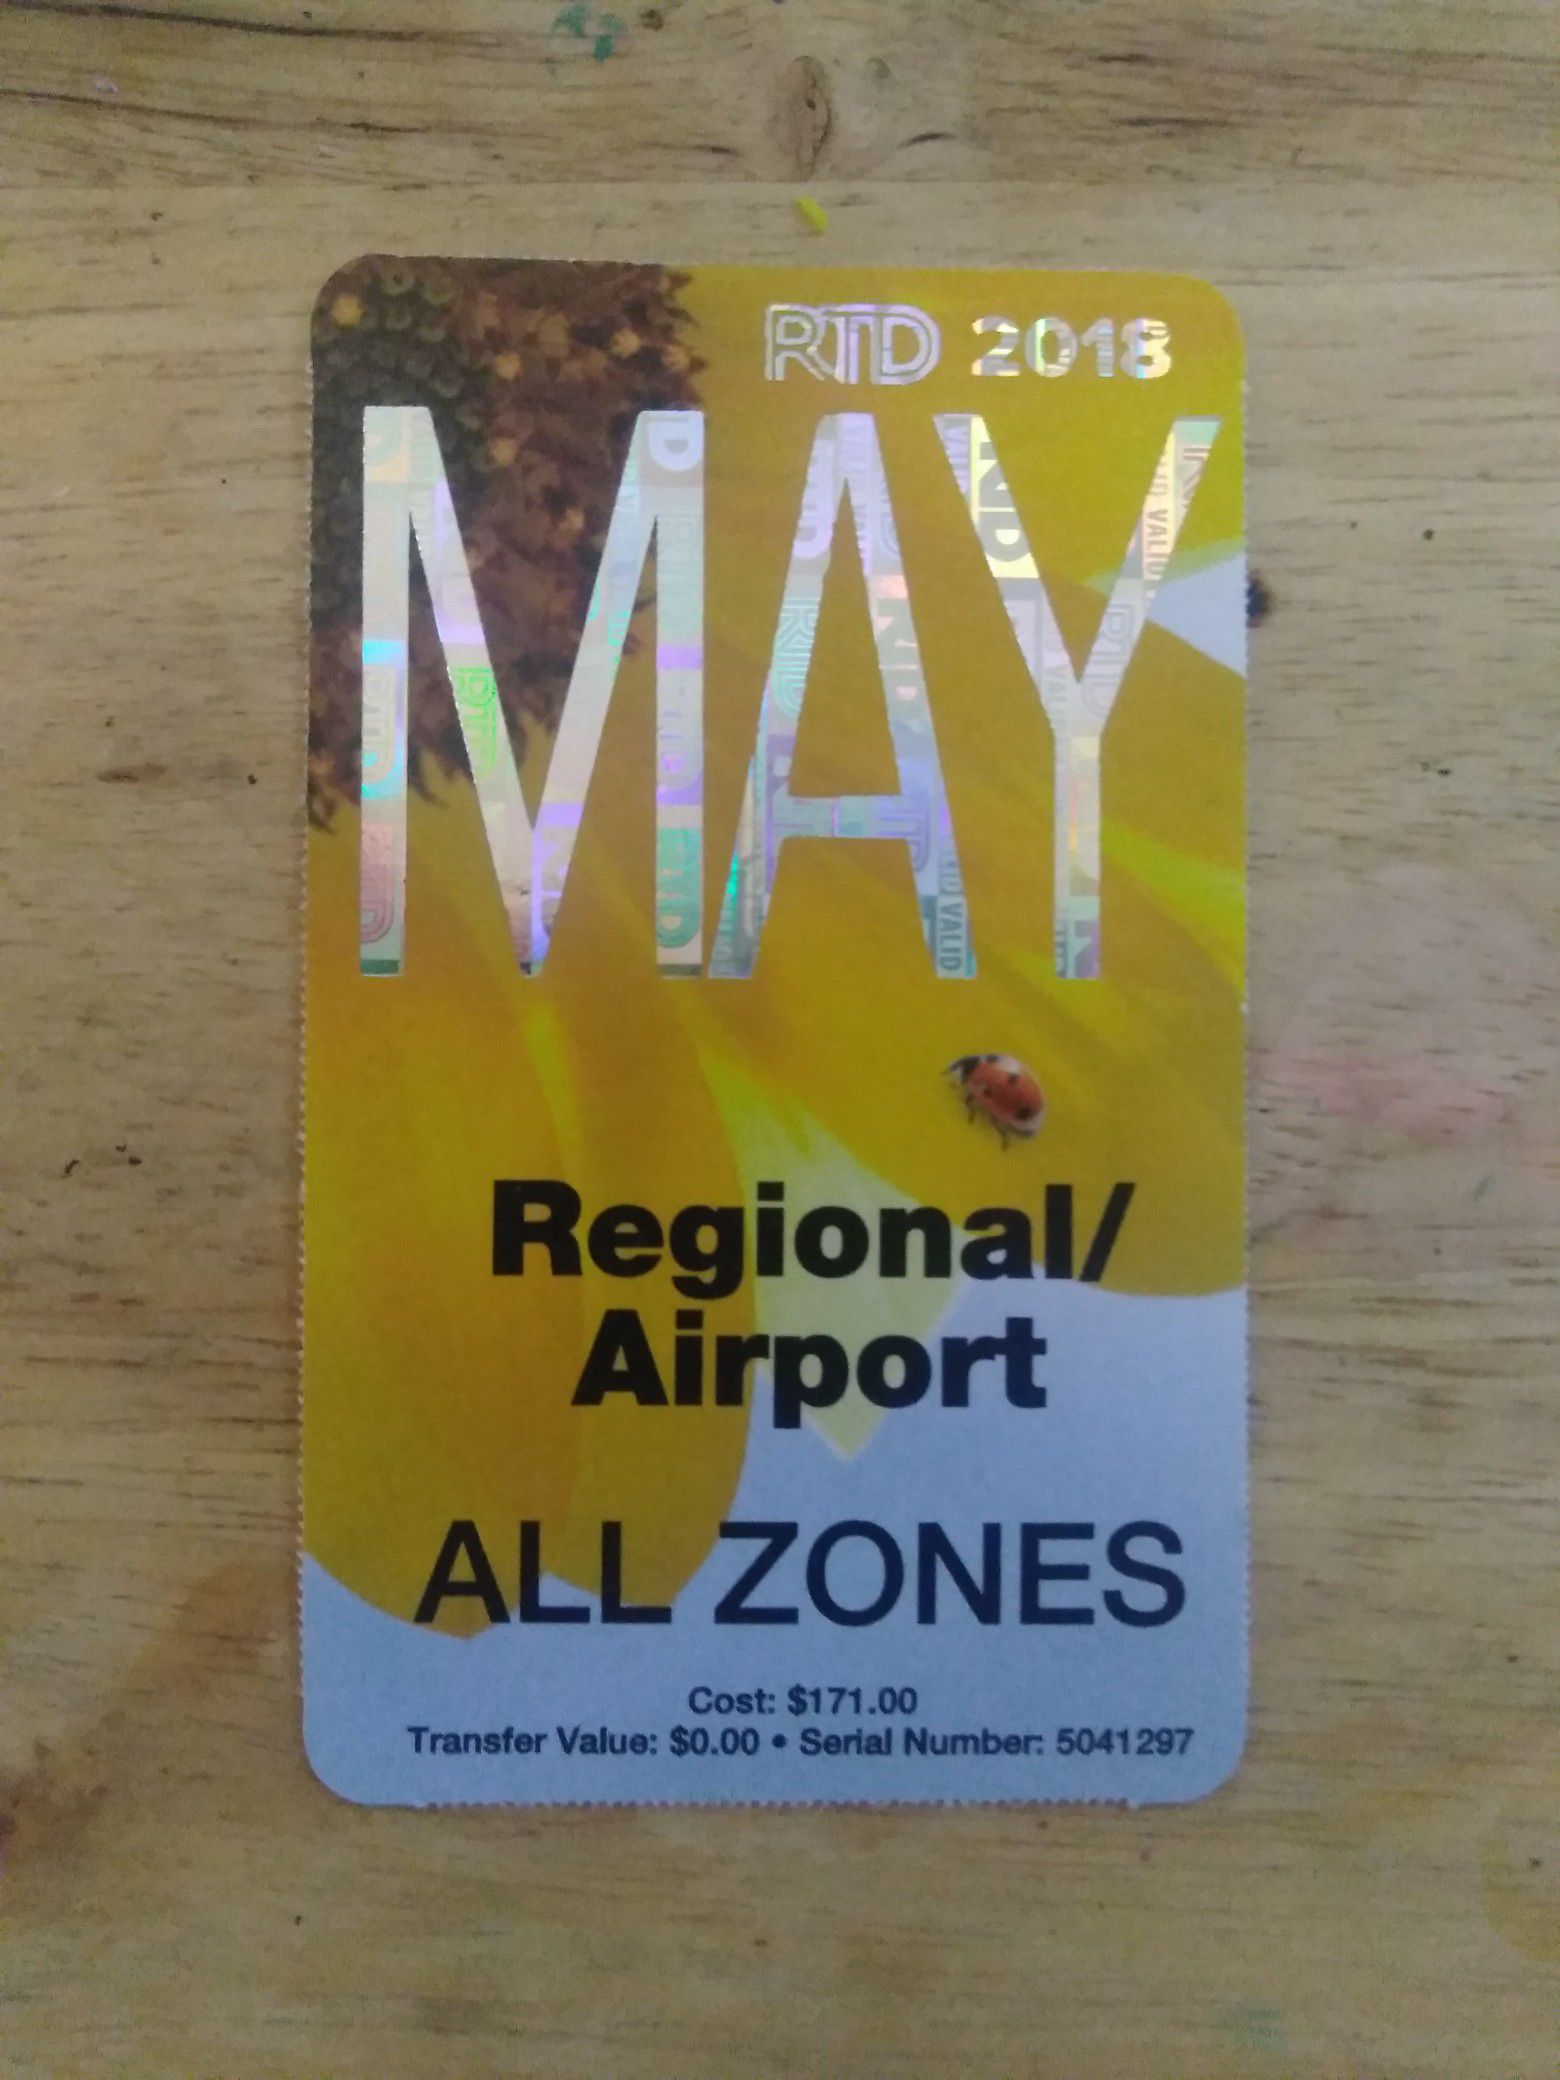 RTD regional May pass